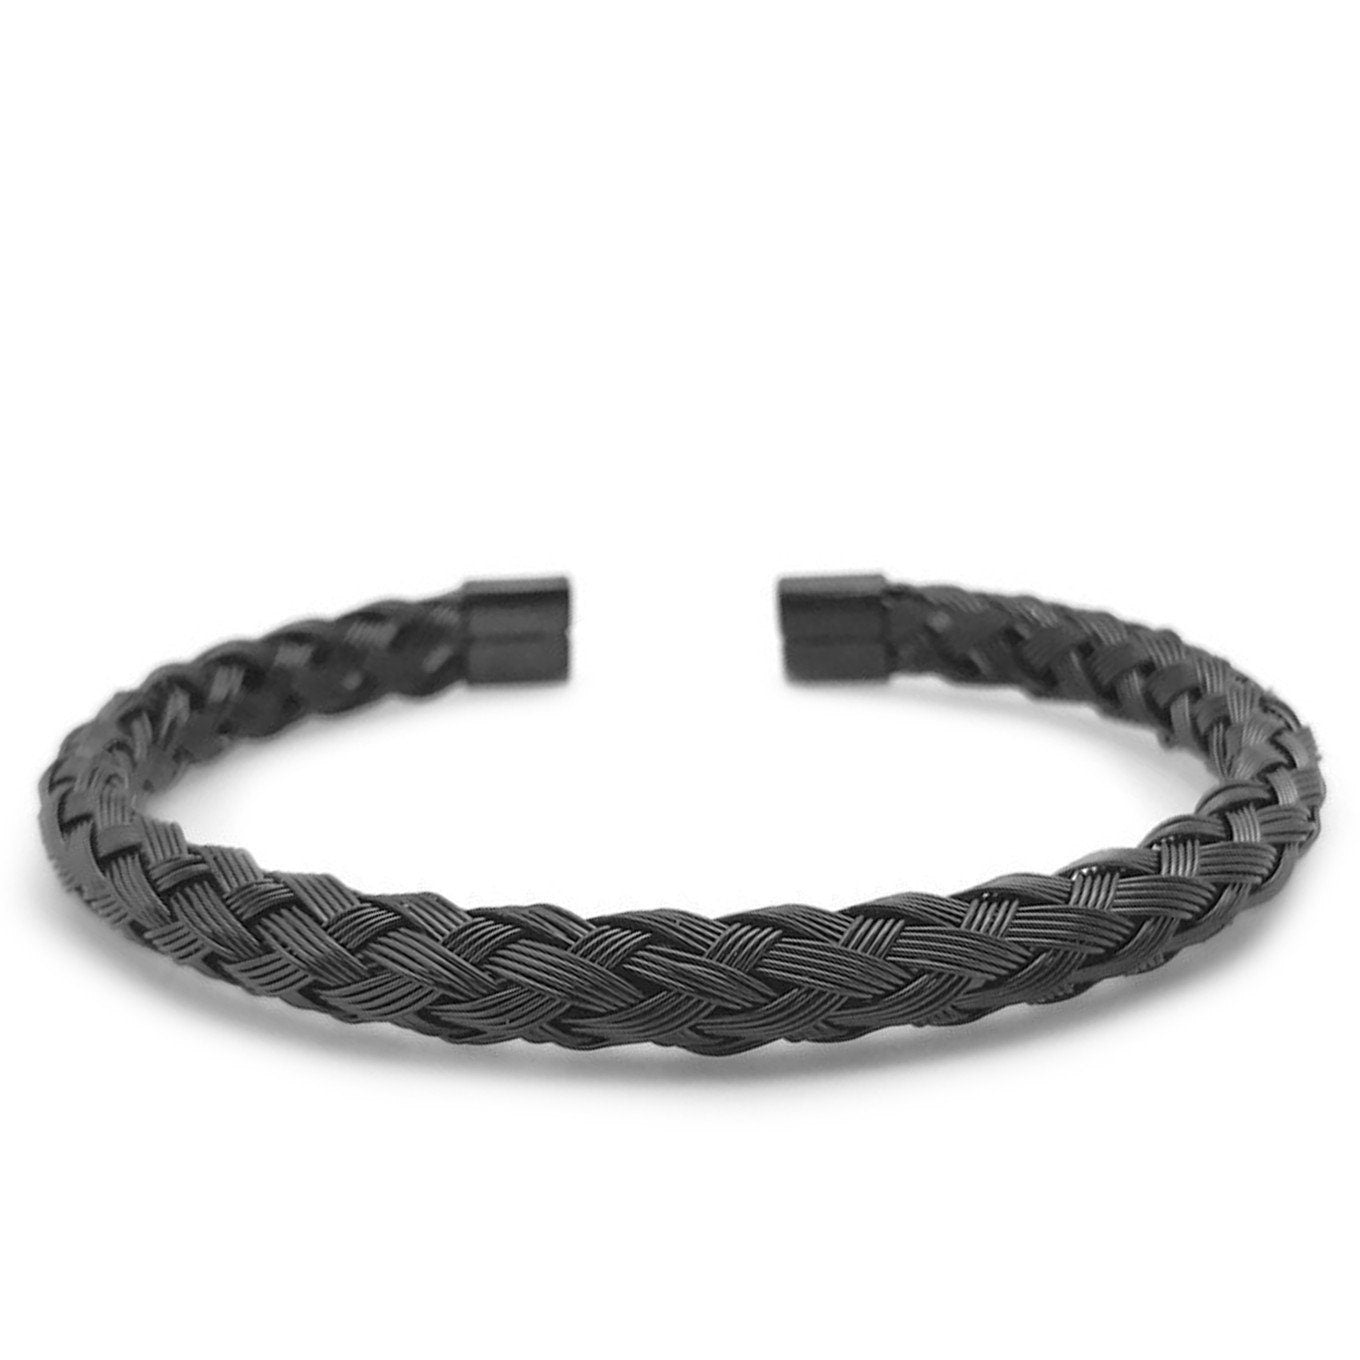 Black Metal Braided Bracelet, Mens Woven Bracelet, Stainless Steel Jewelry, Unisex Jewelry, Gift for Girlfriend, Boyfriend Bracelet